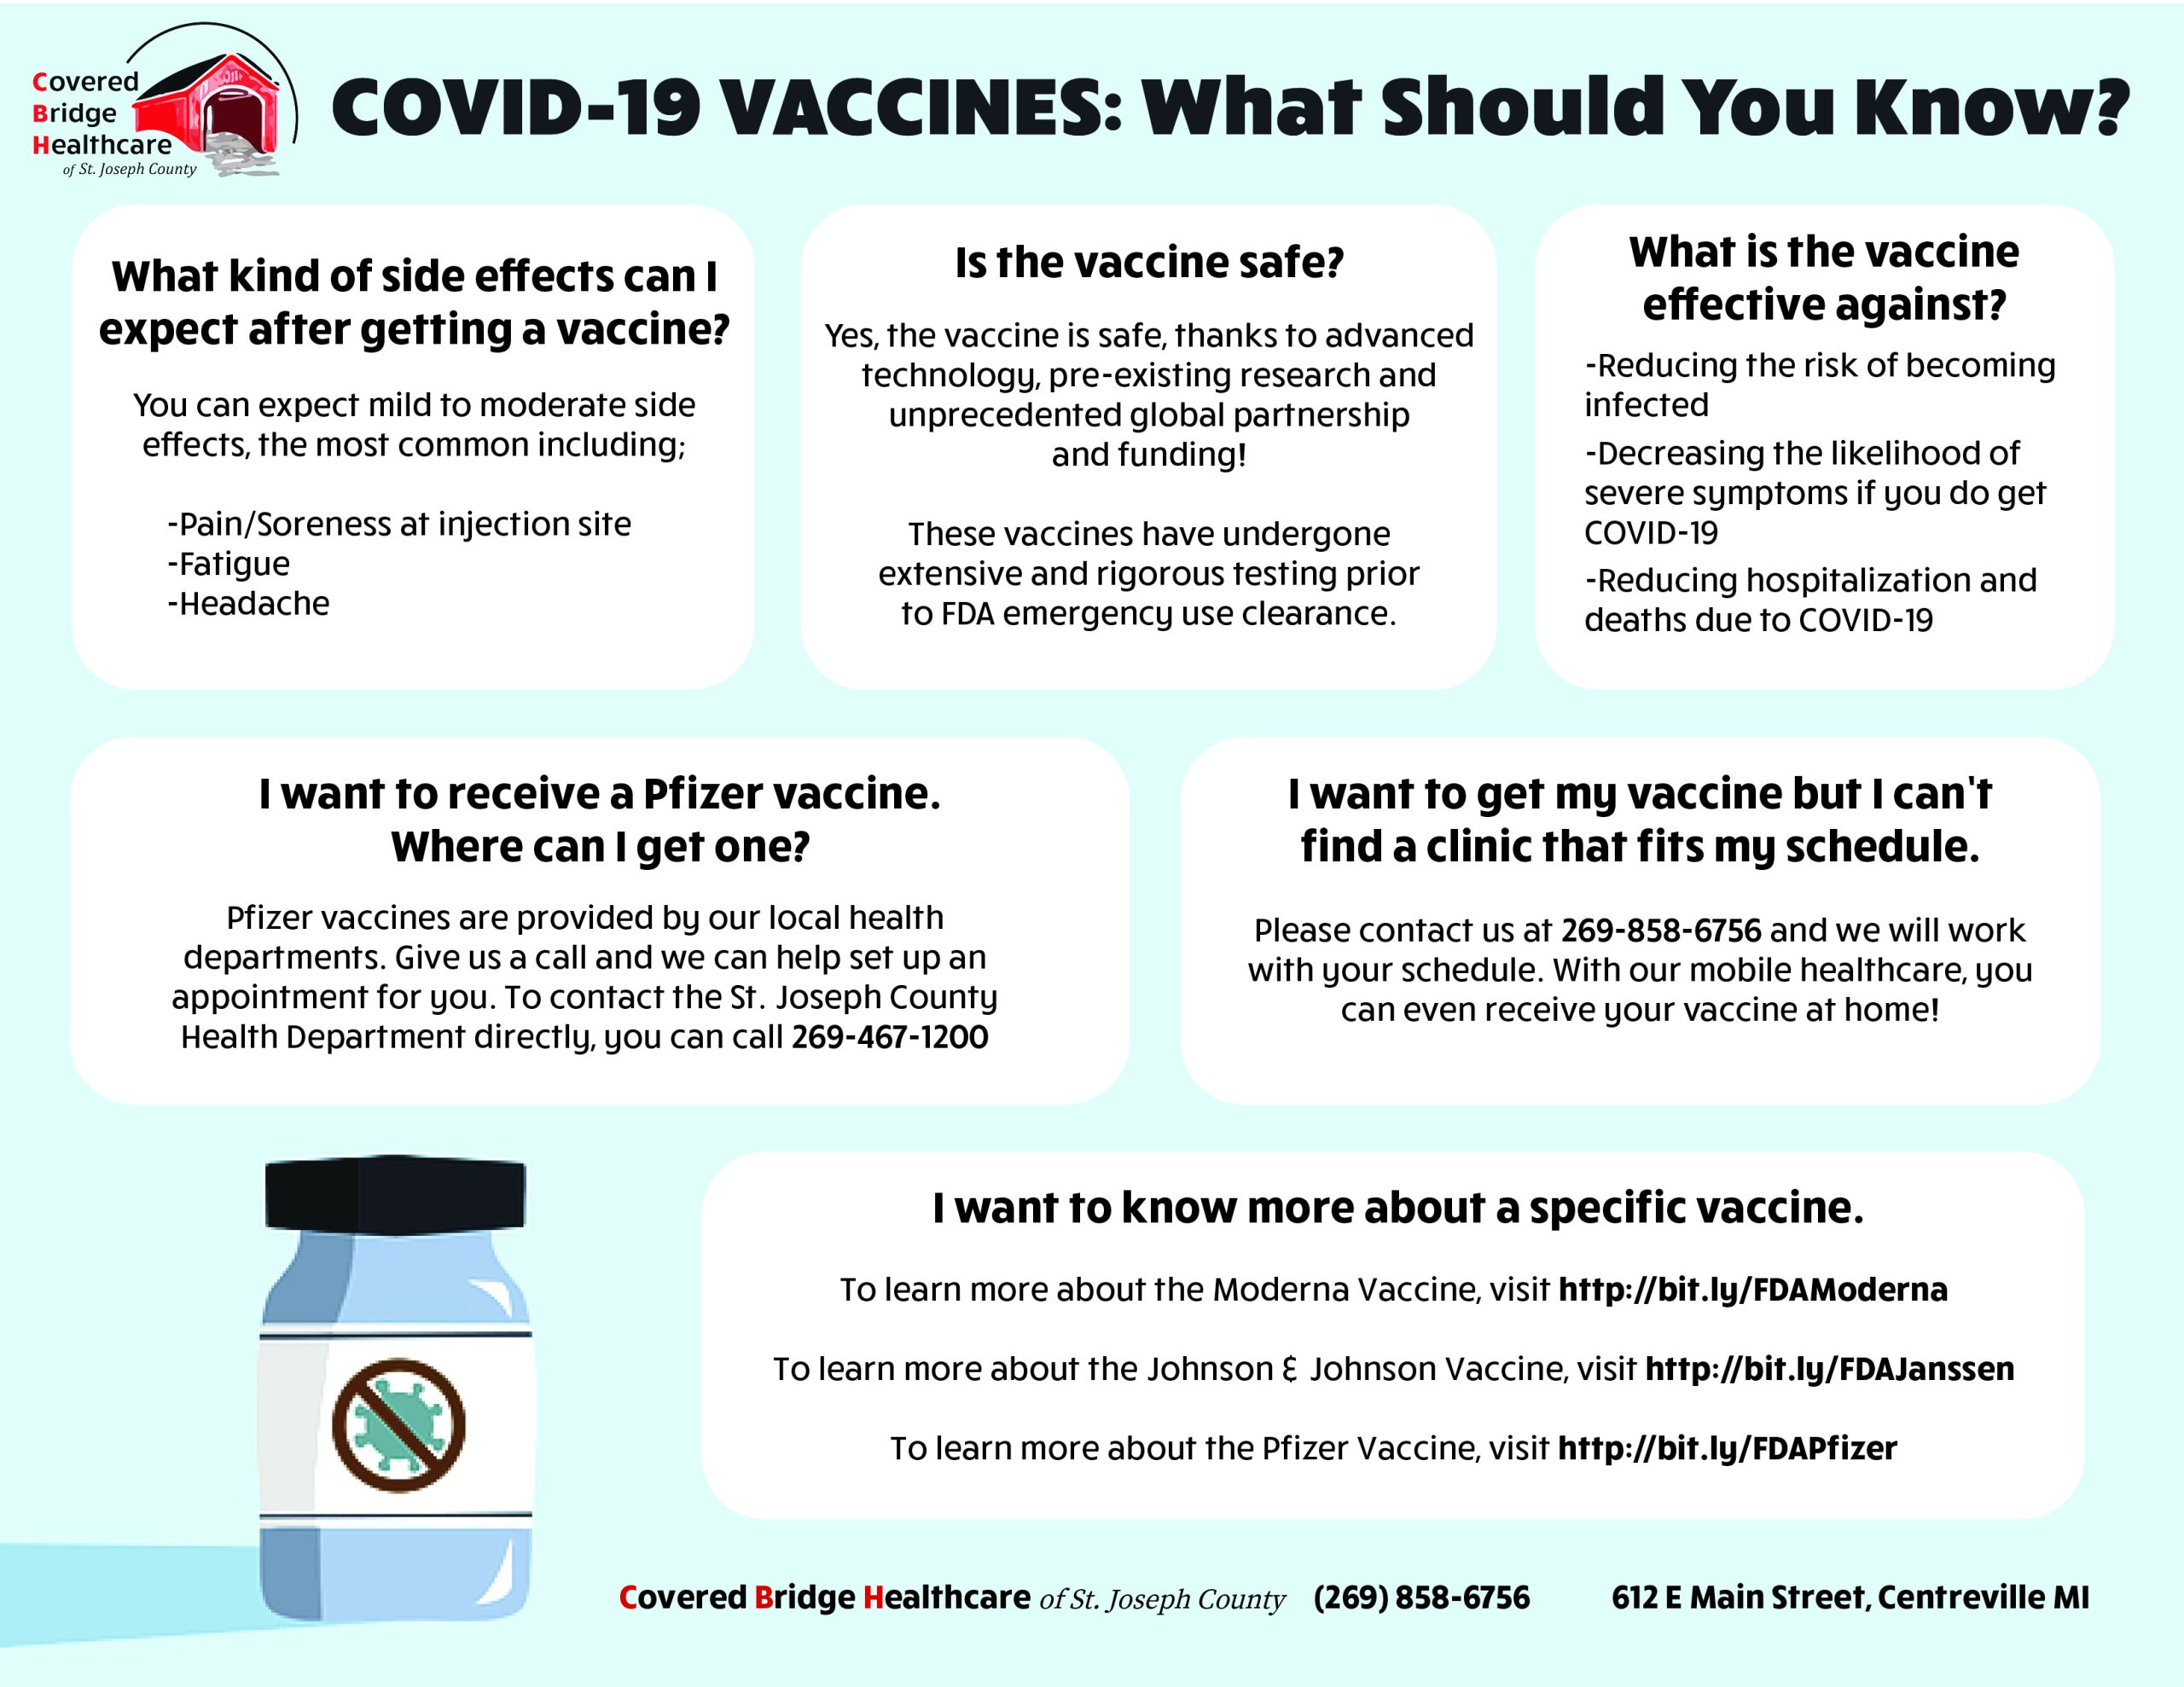 COVID Vaccine Information Graphic